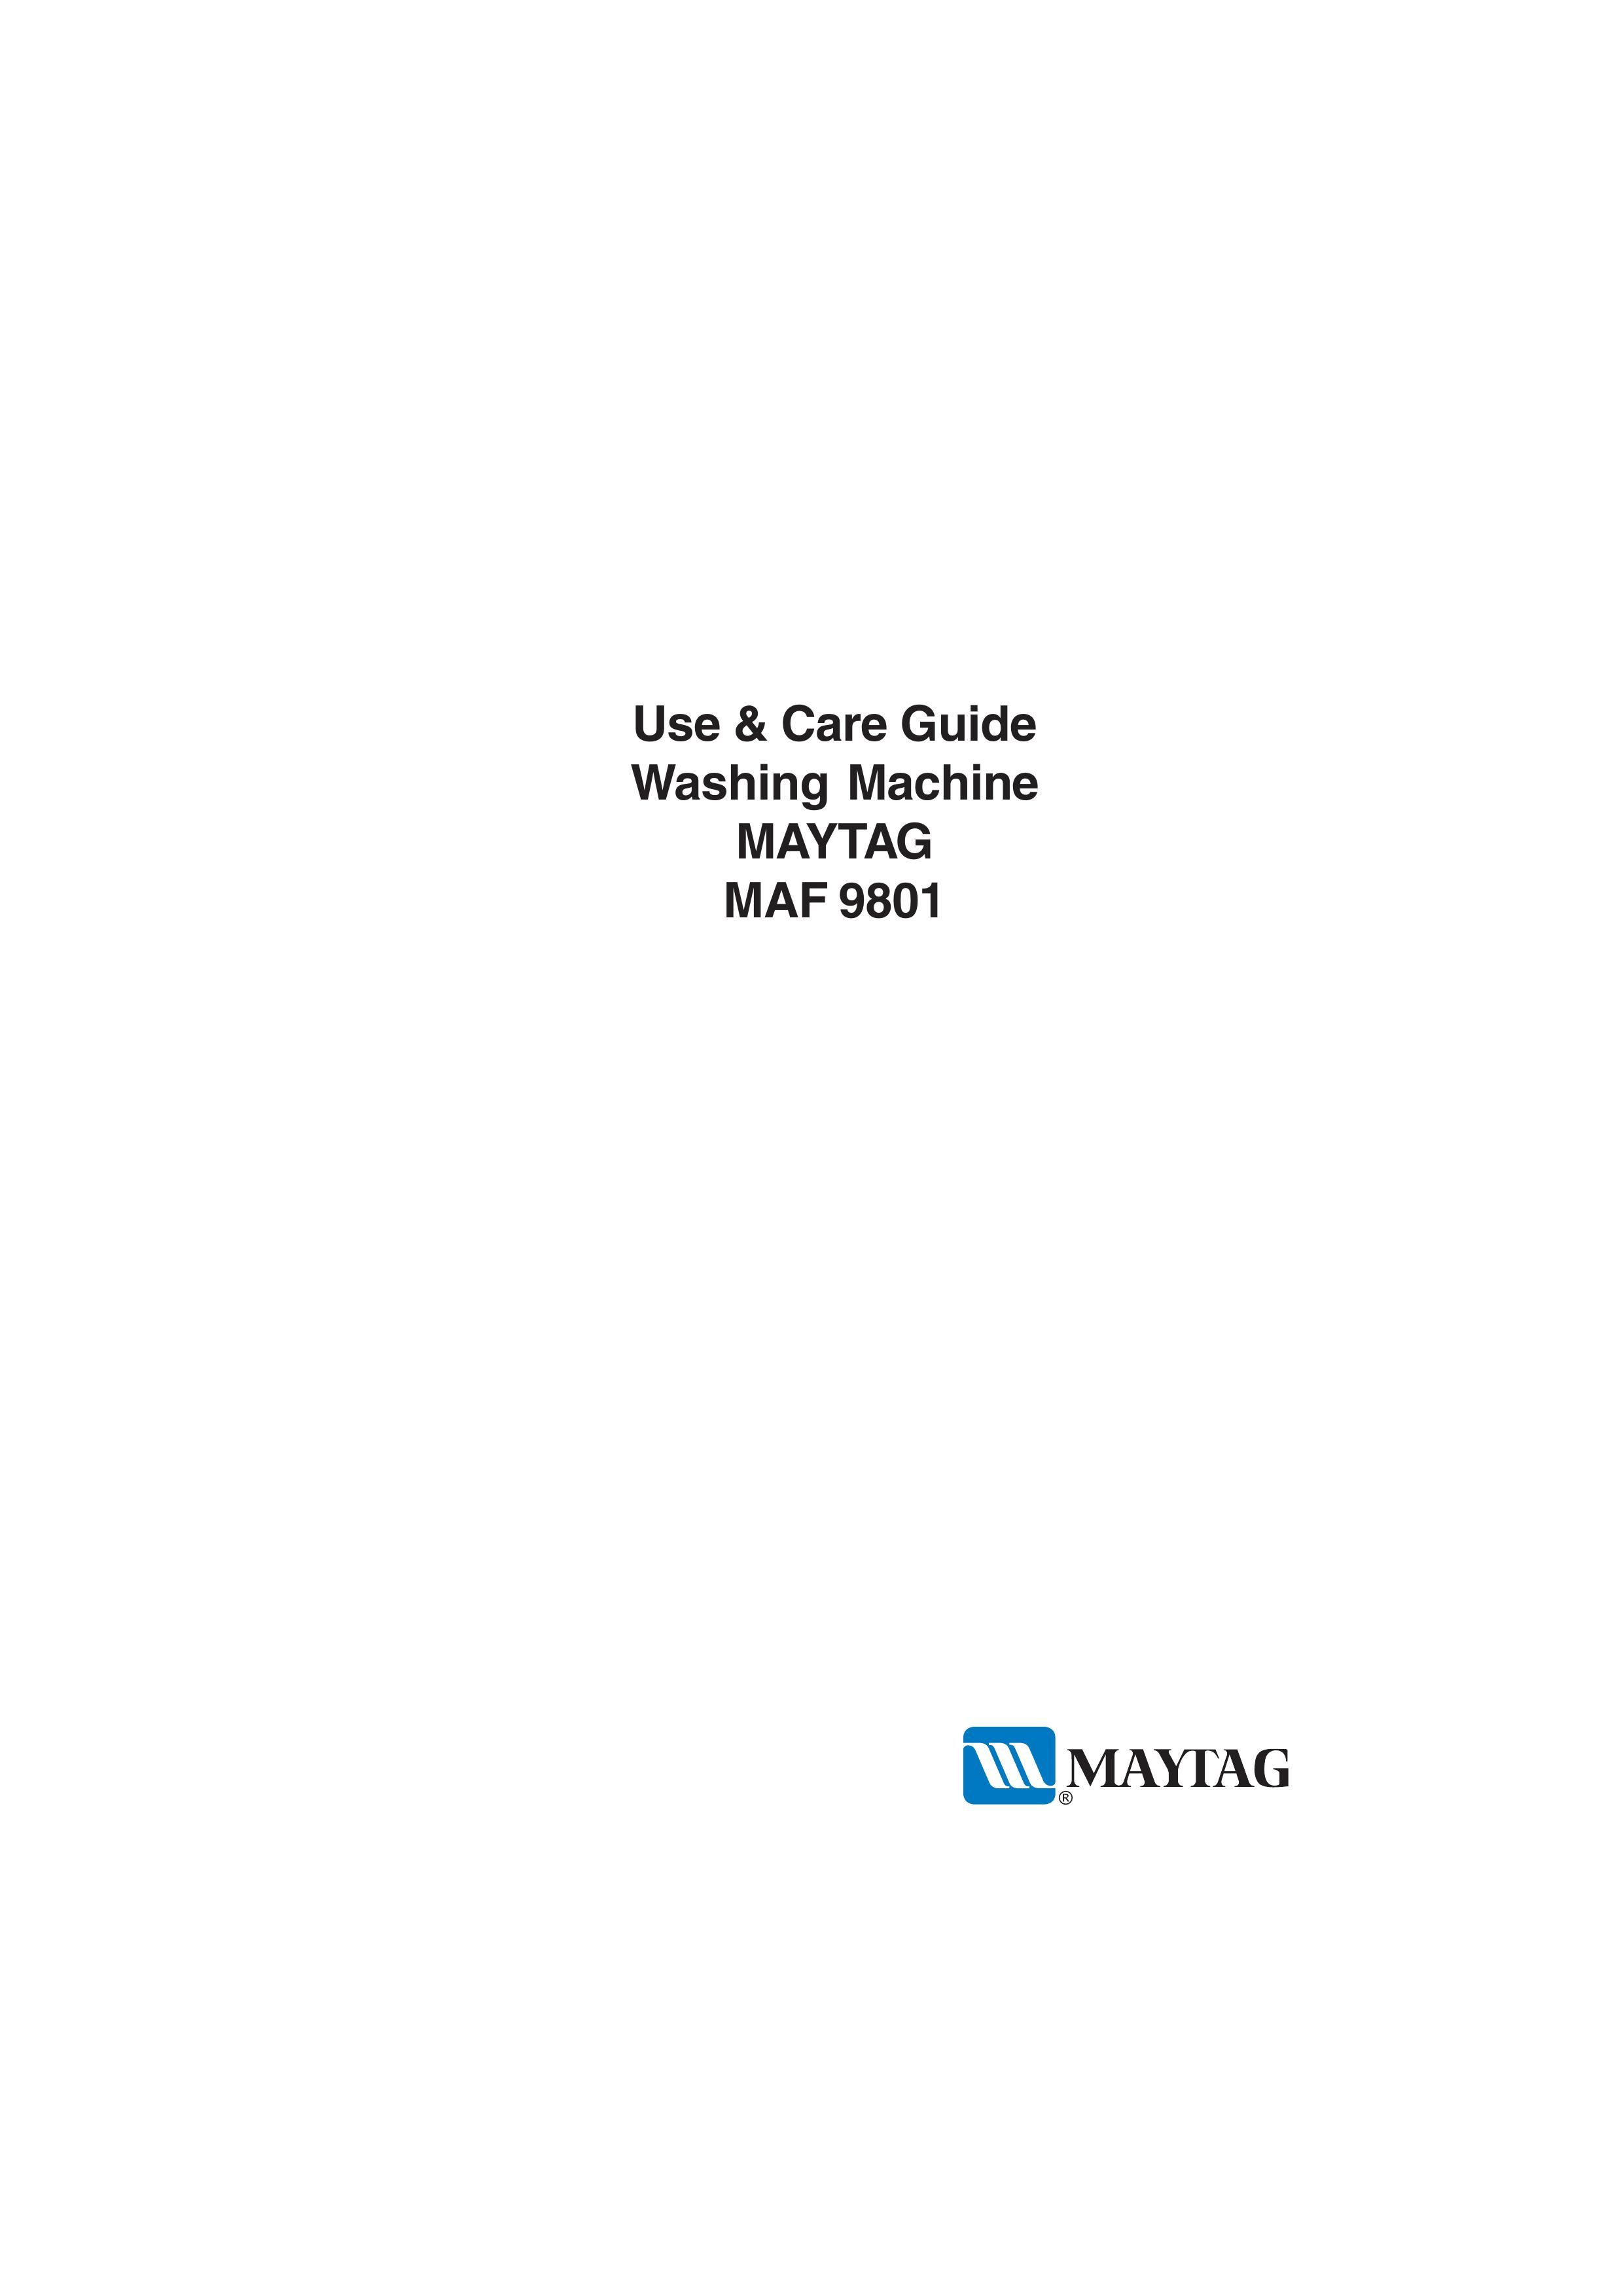 Maytag MAF 9801 Washer/Dryer User Manual